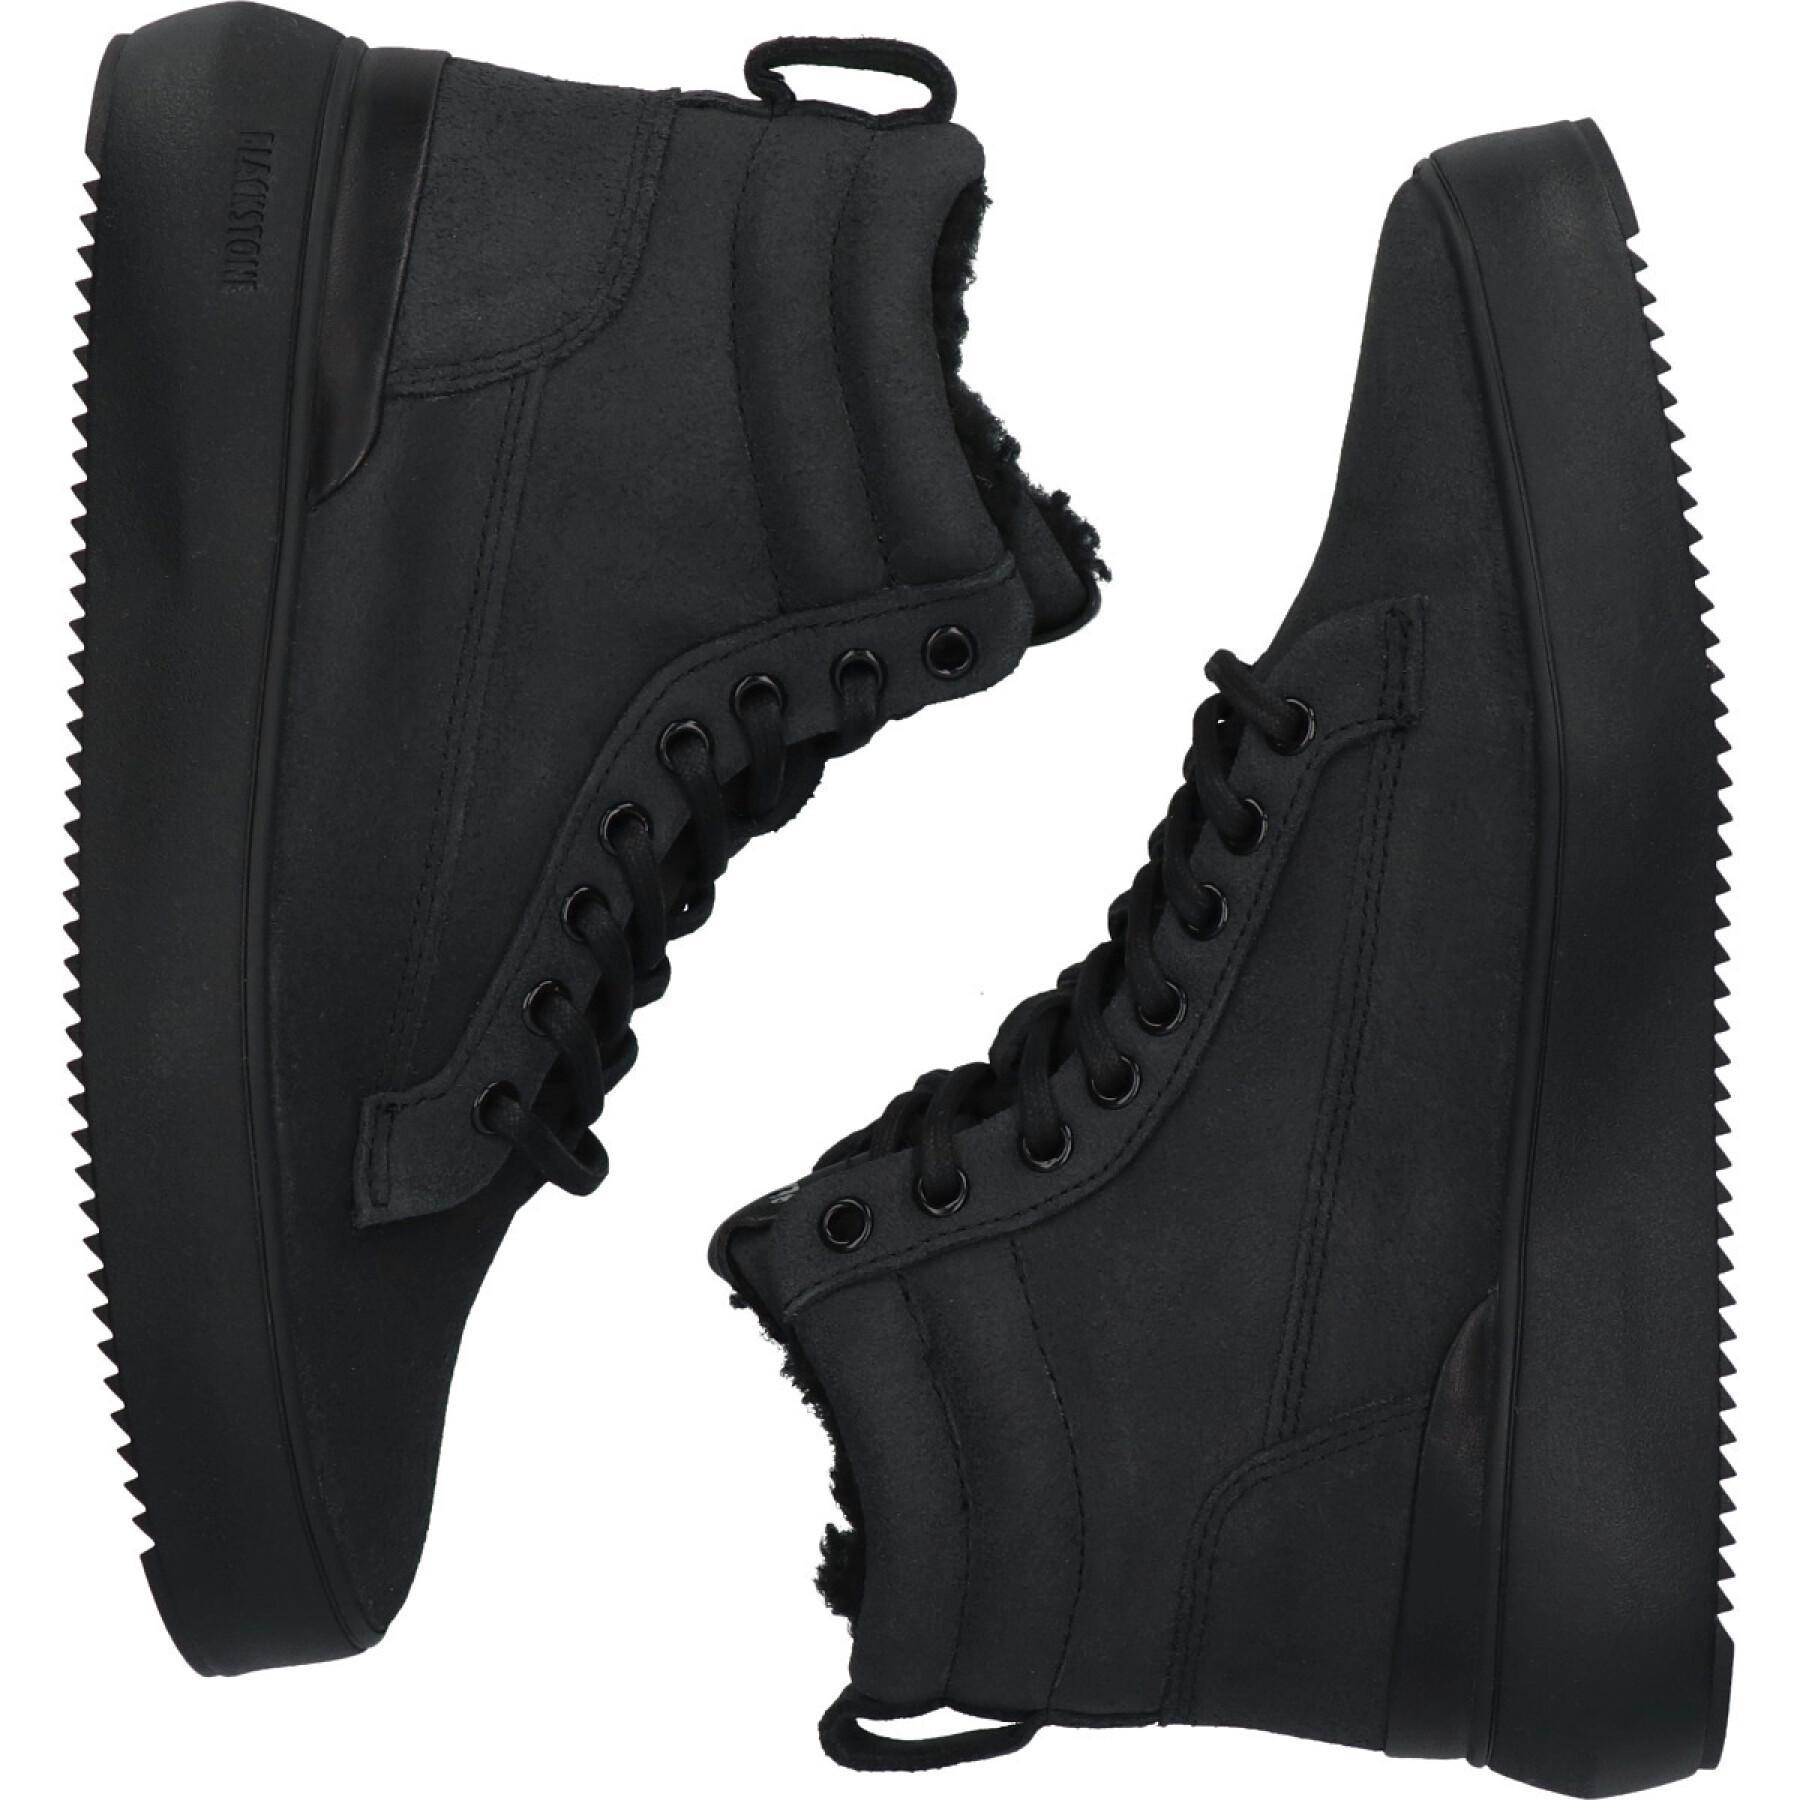 Zapatillas de deporte de mujer Blackstone Soley - YL65